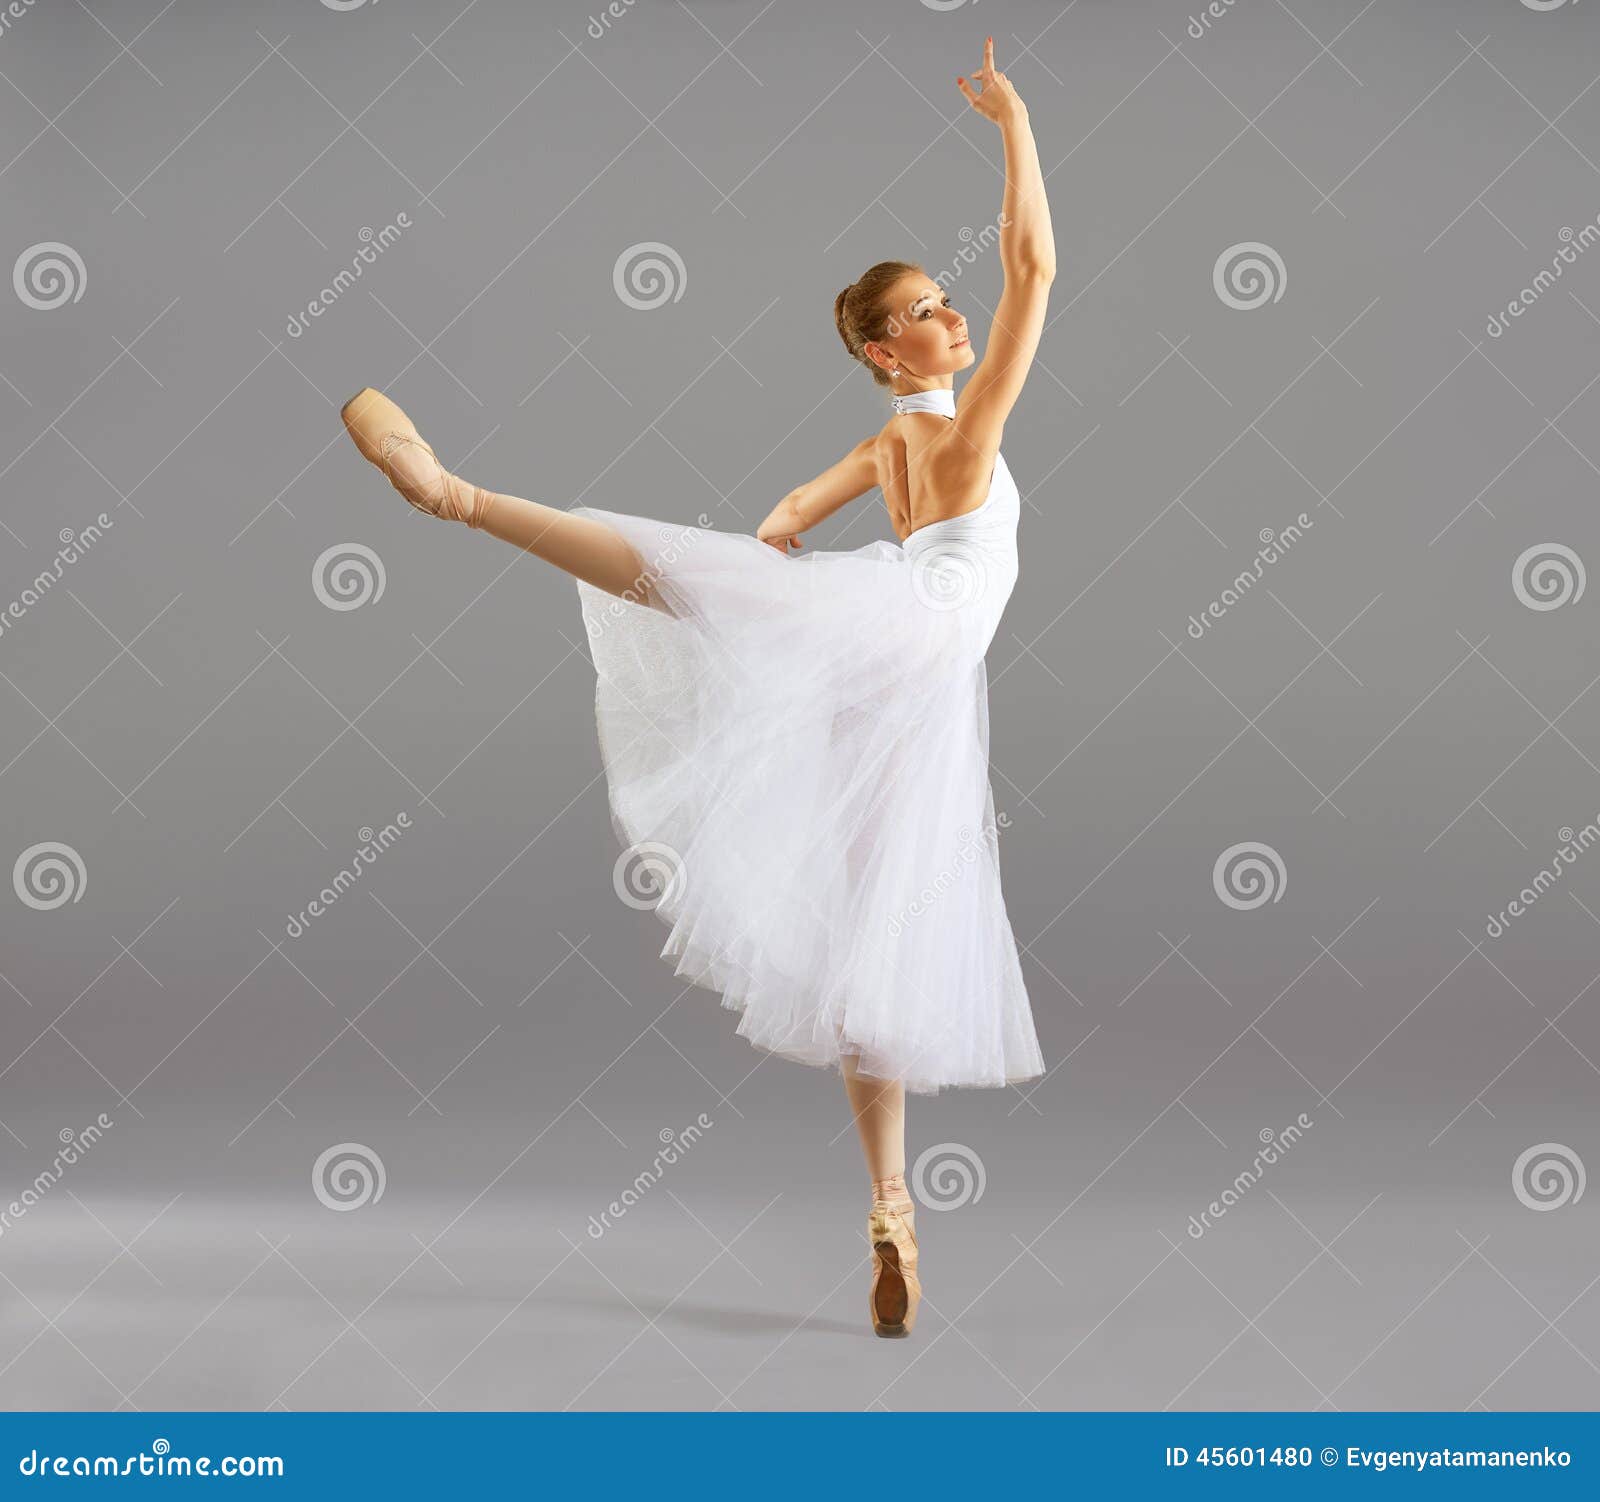 Ballerine Dans La Danse Classique De Pose De Ballet Photo stock